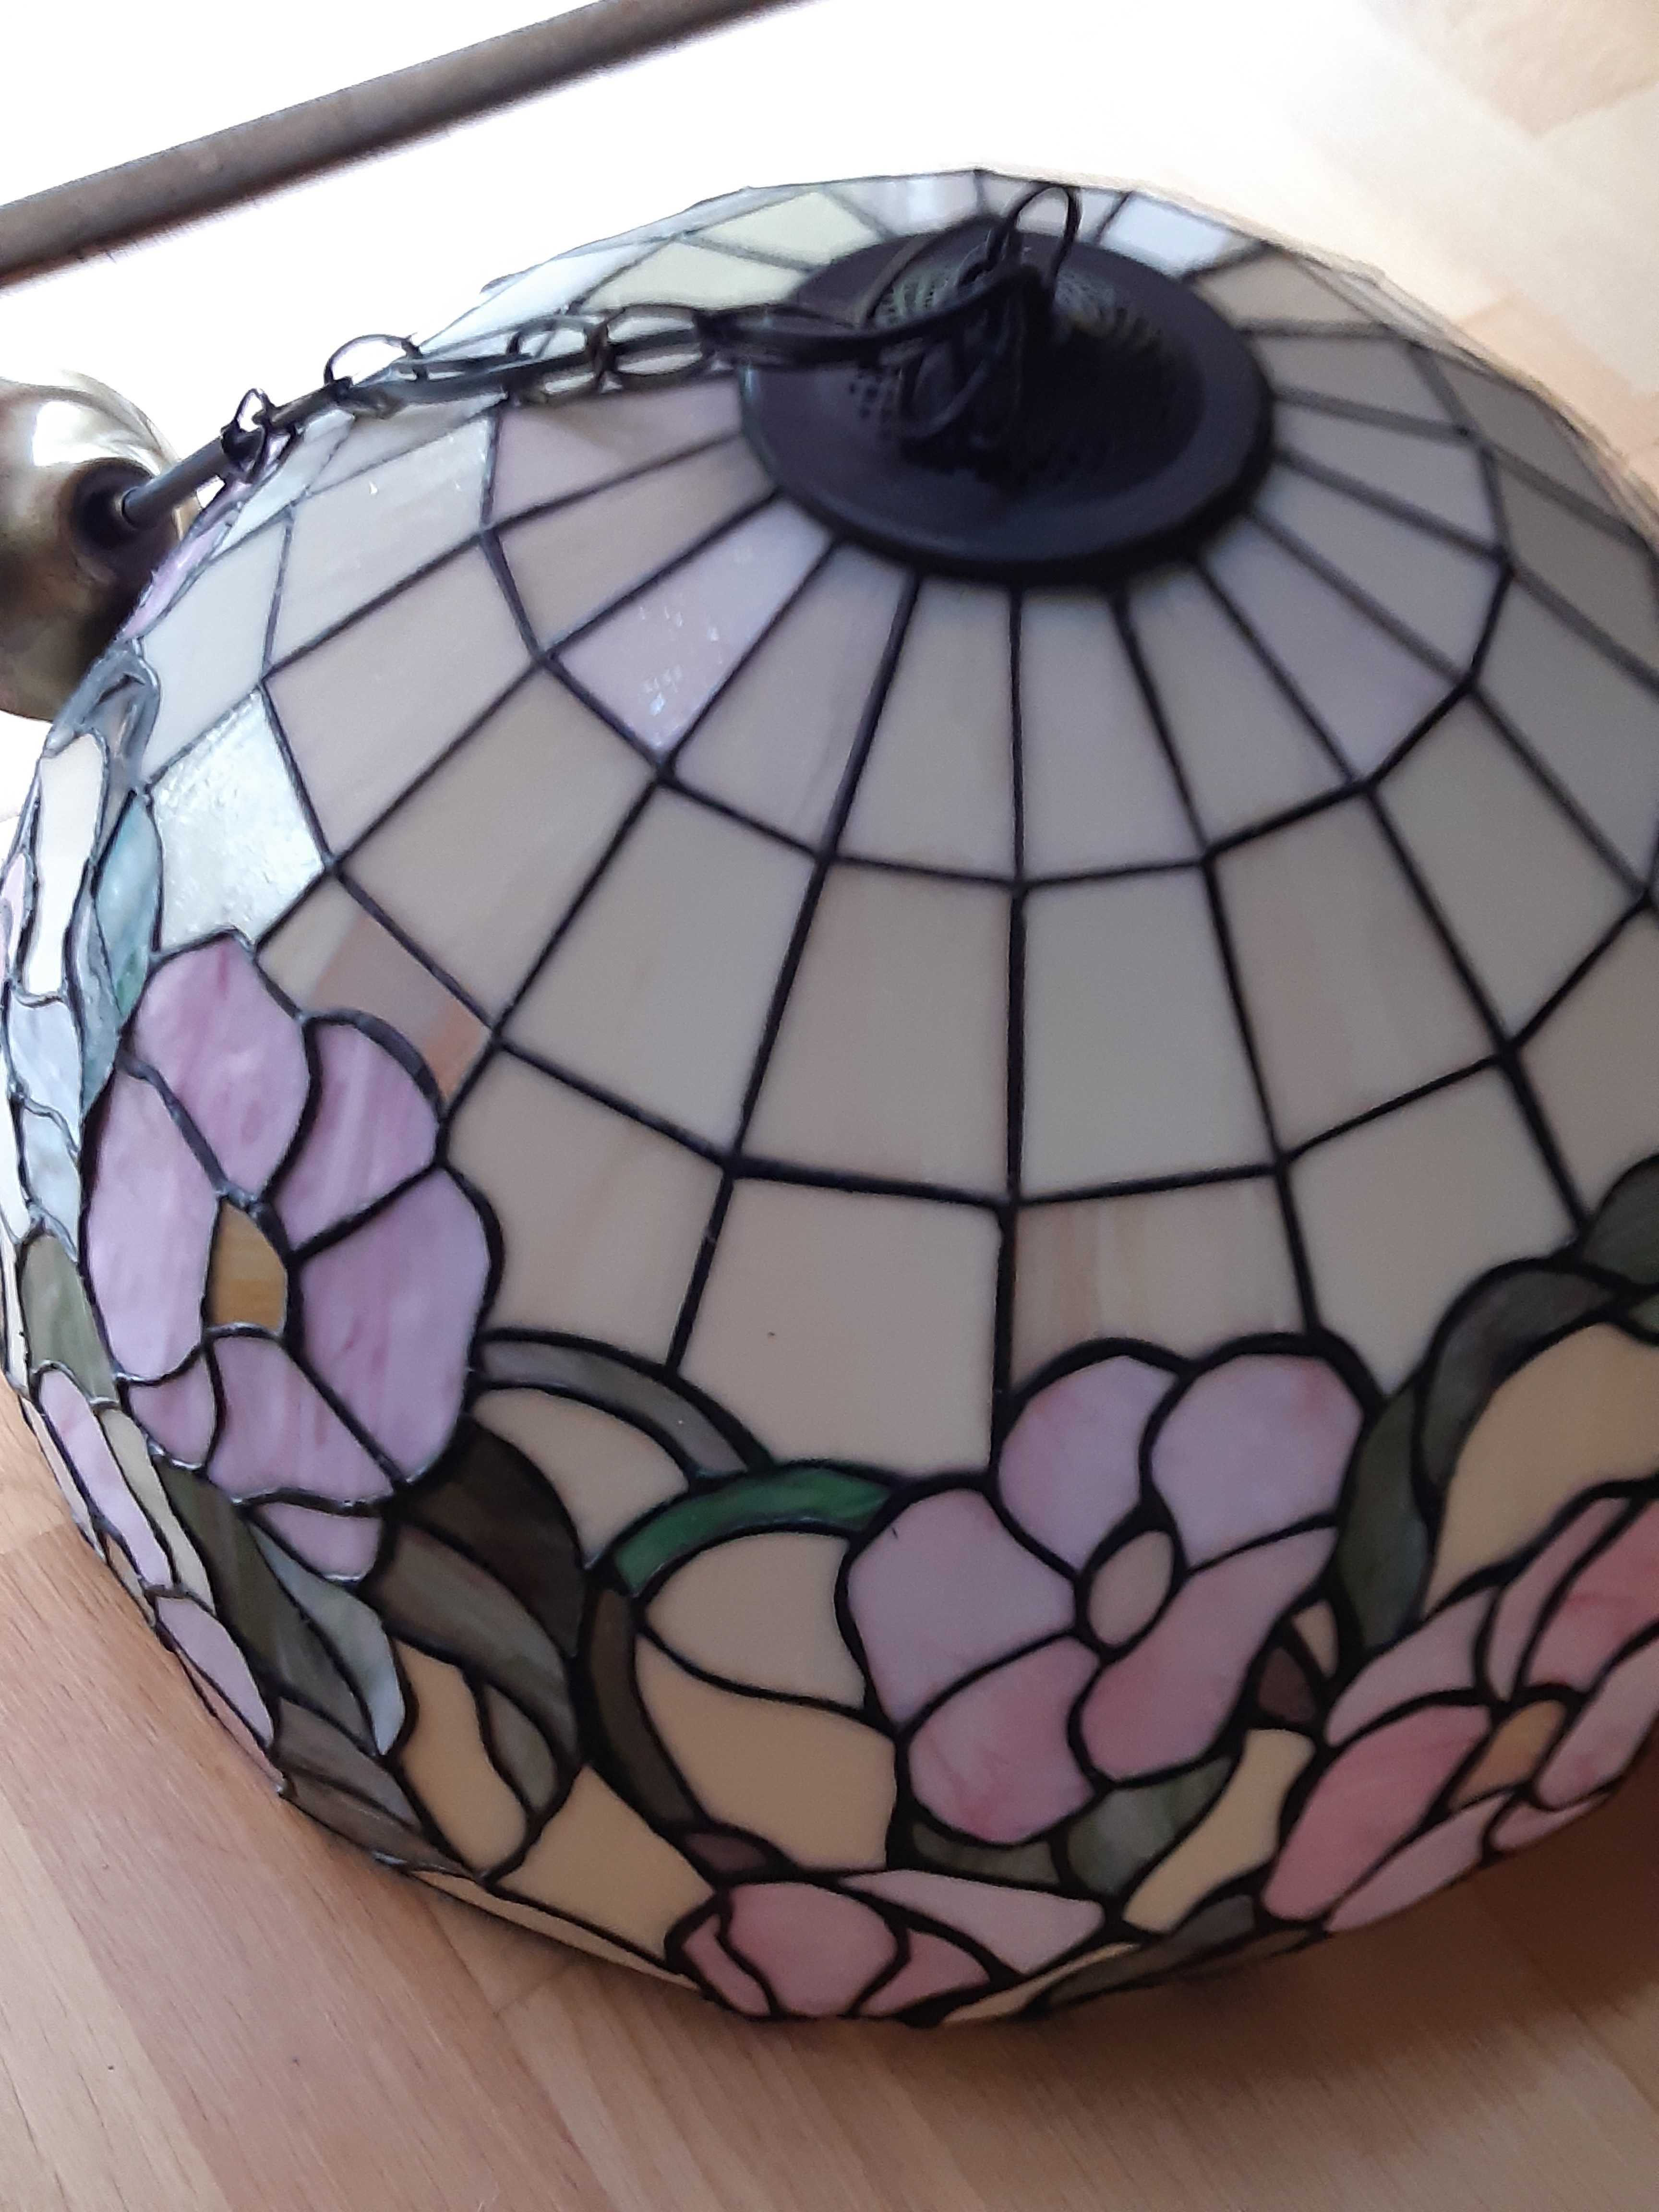 lampa wisząca, witraż kwiaty, styl Tiffany, średnica 50 cm